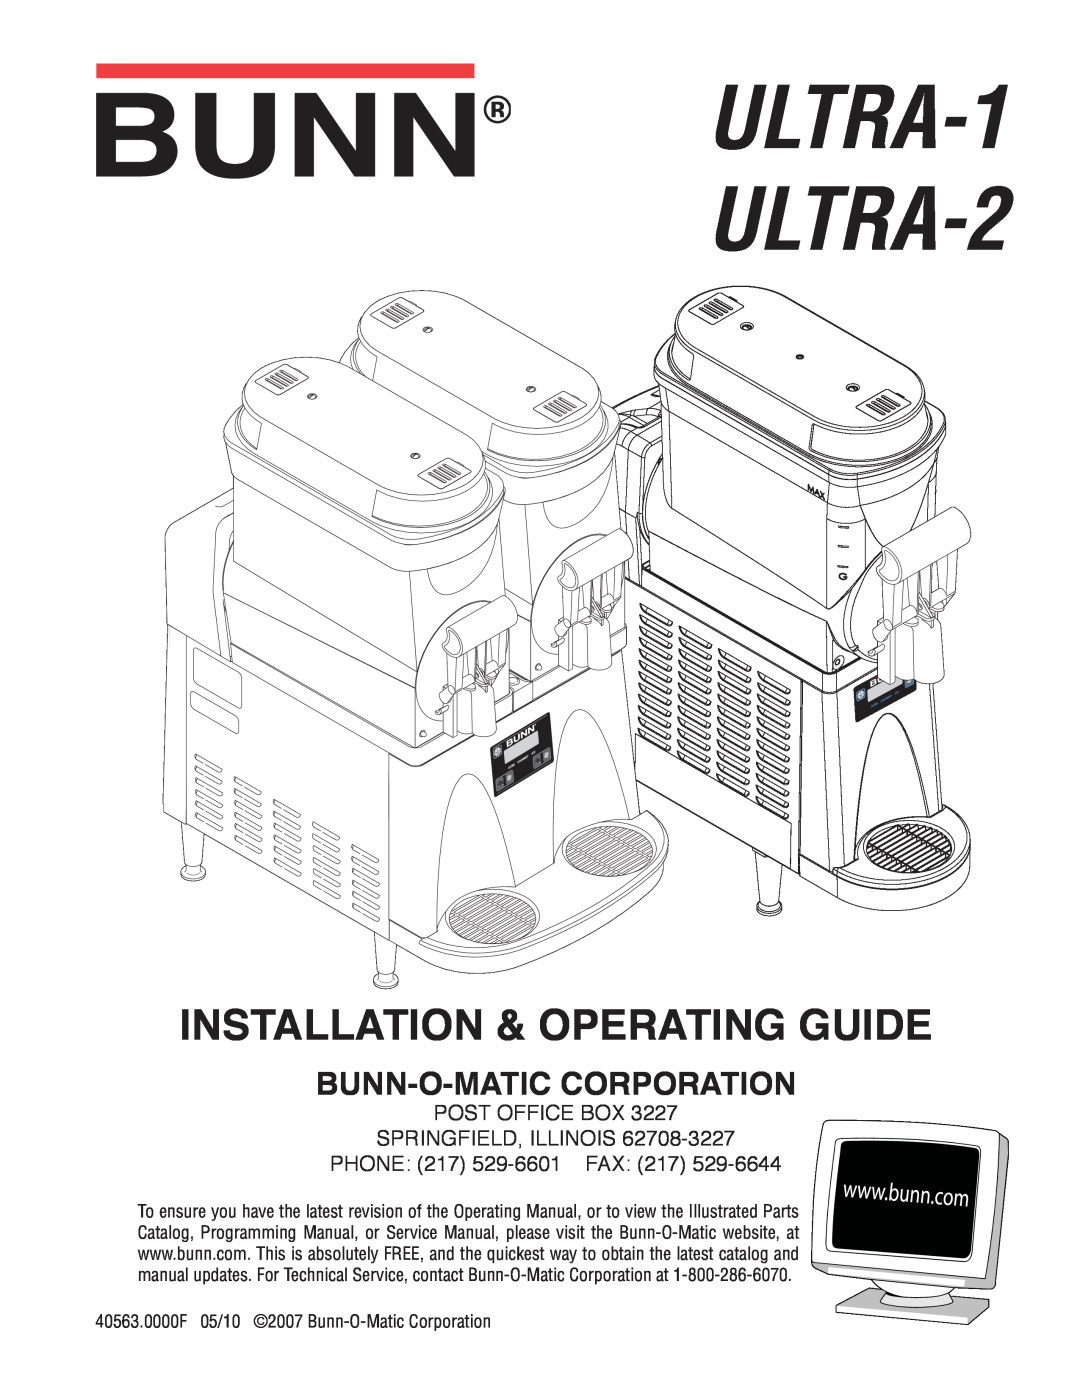 Bunn manual ULTRA-1 ULTRA-2, Service & Repair Manual, Bunn-O-Maticcorporation 